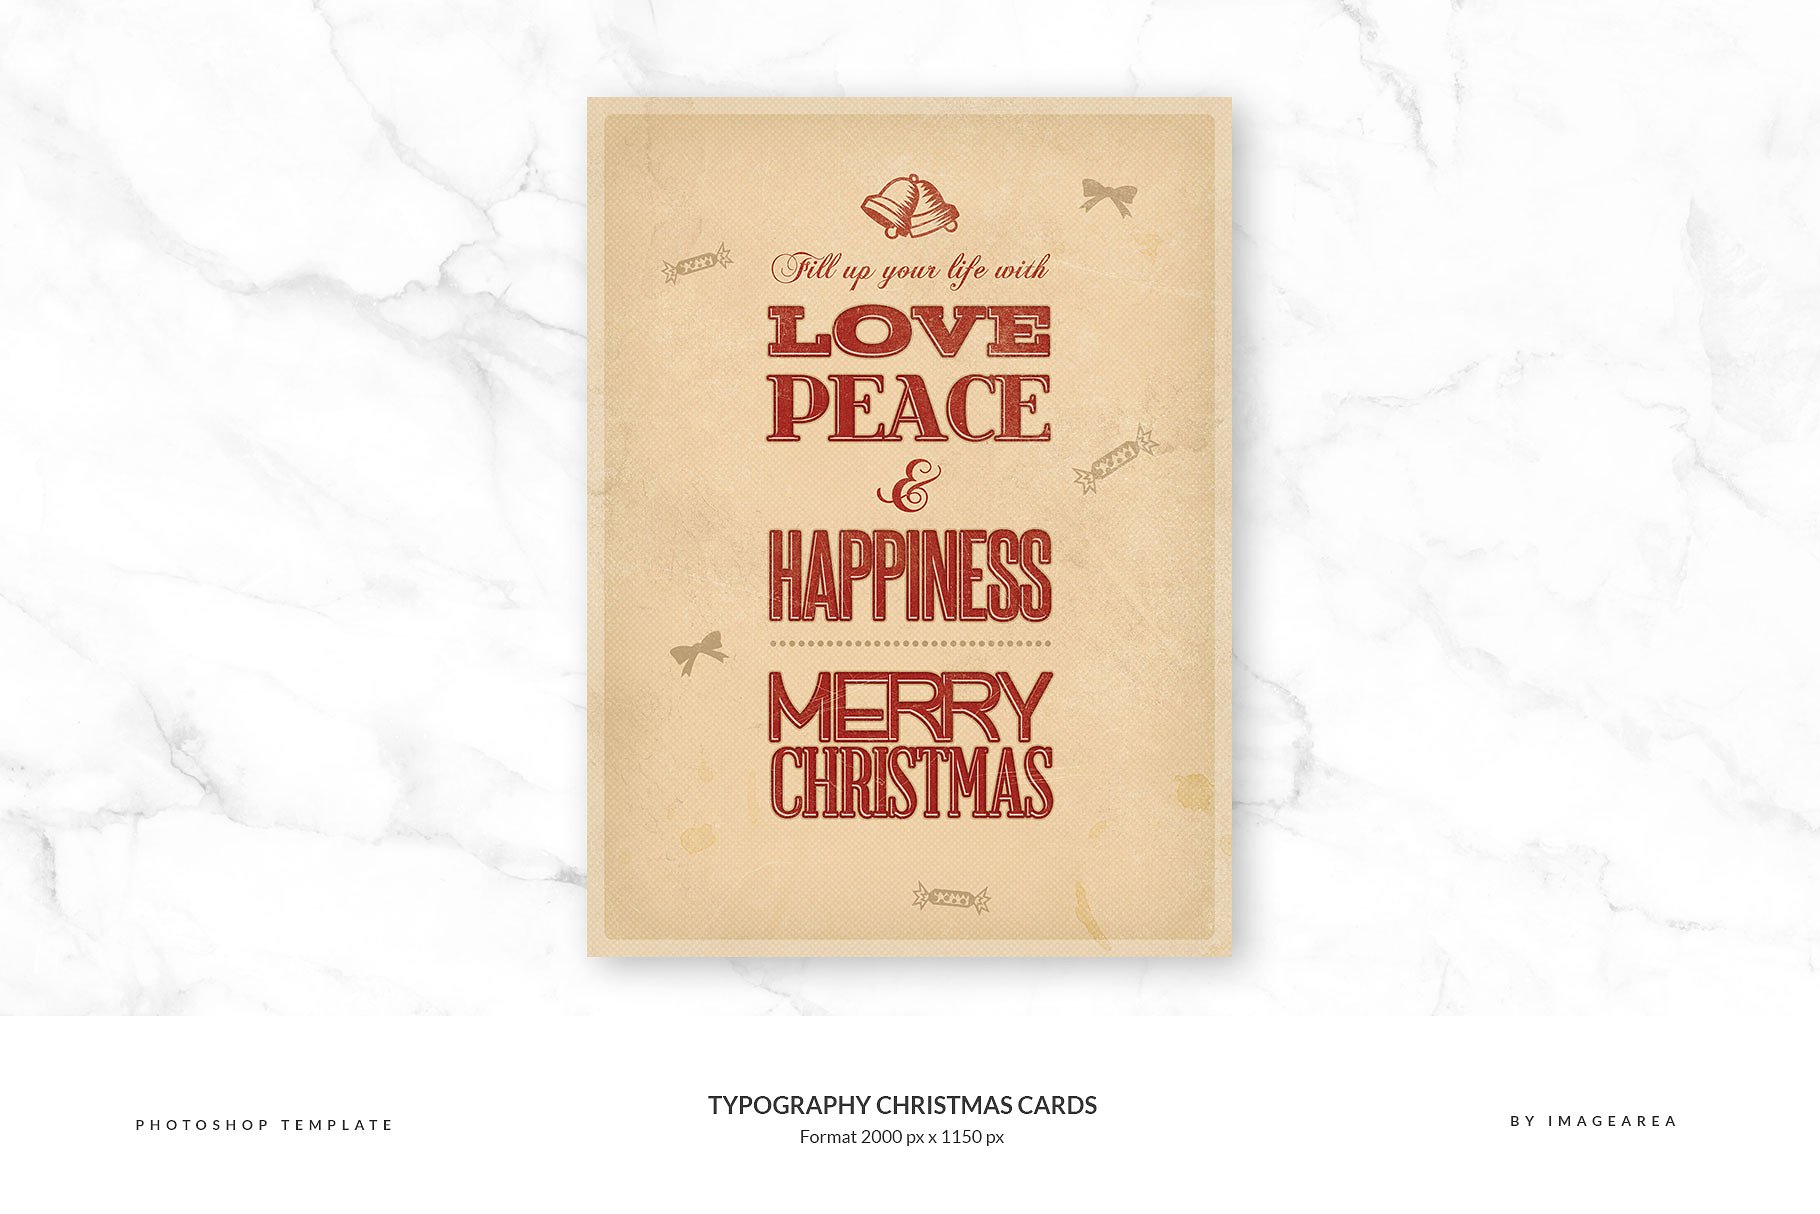 古典风格圣诞节活动贺卡模板 Typography Christmas Cards插图